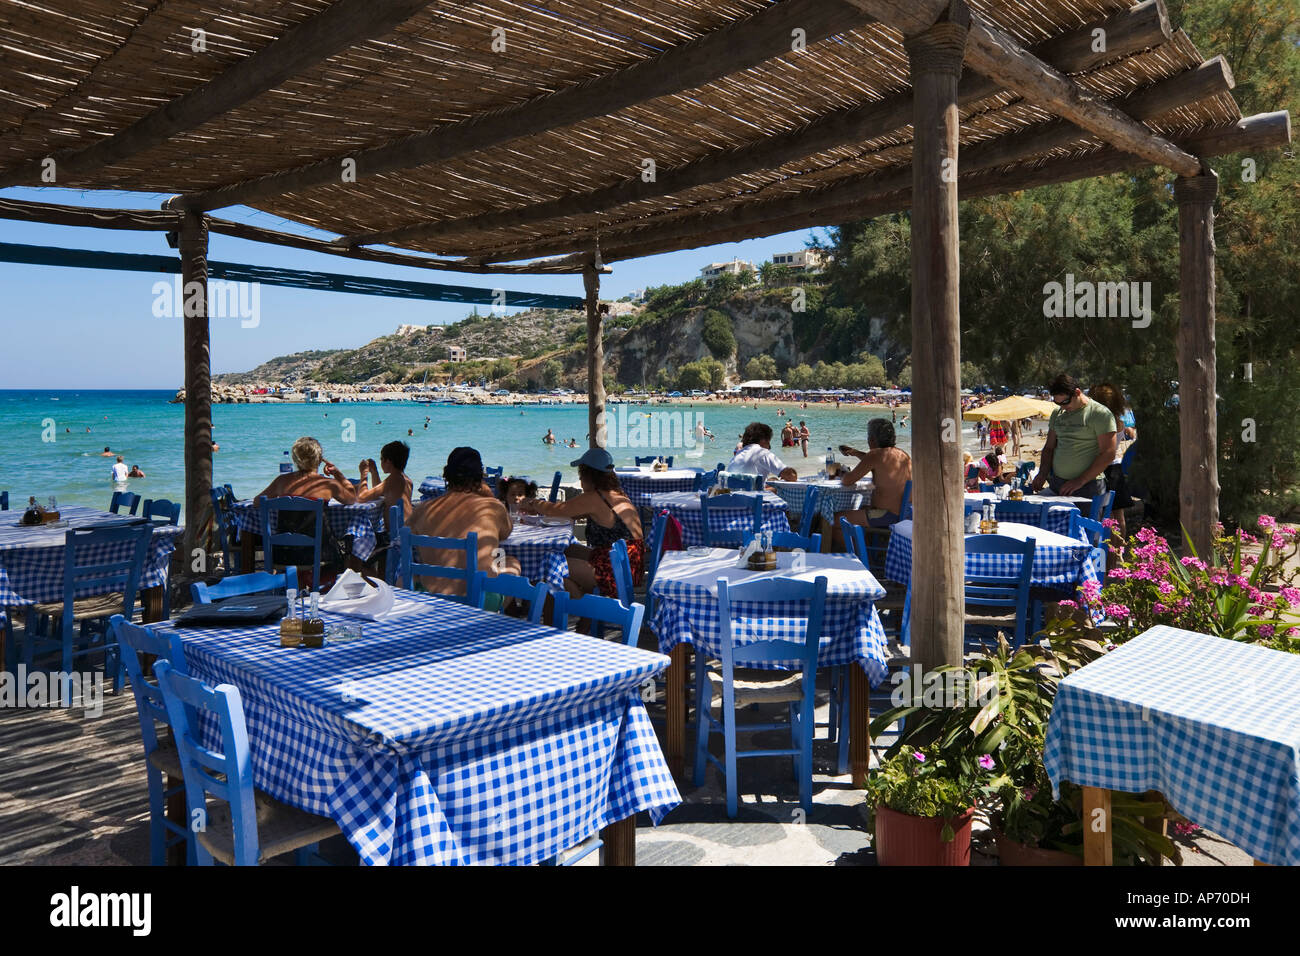 Am Strand Taverne in Almeritha (Almeridaansicht, Almiridha, Almirida, Almyrida), Bucht von Souda, in der Nähe von Chania, Kreta, Griechenland Stockfoto